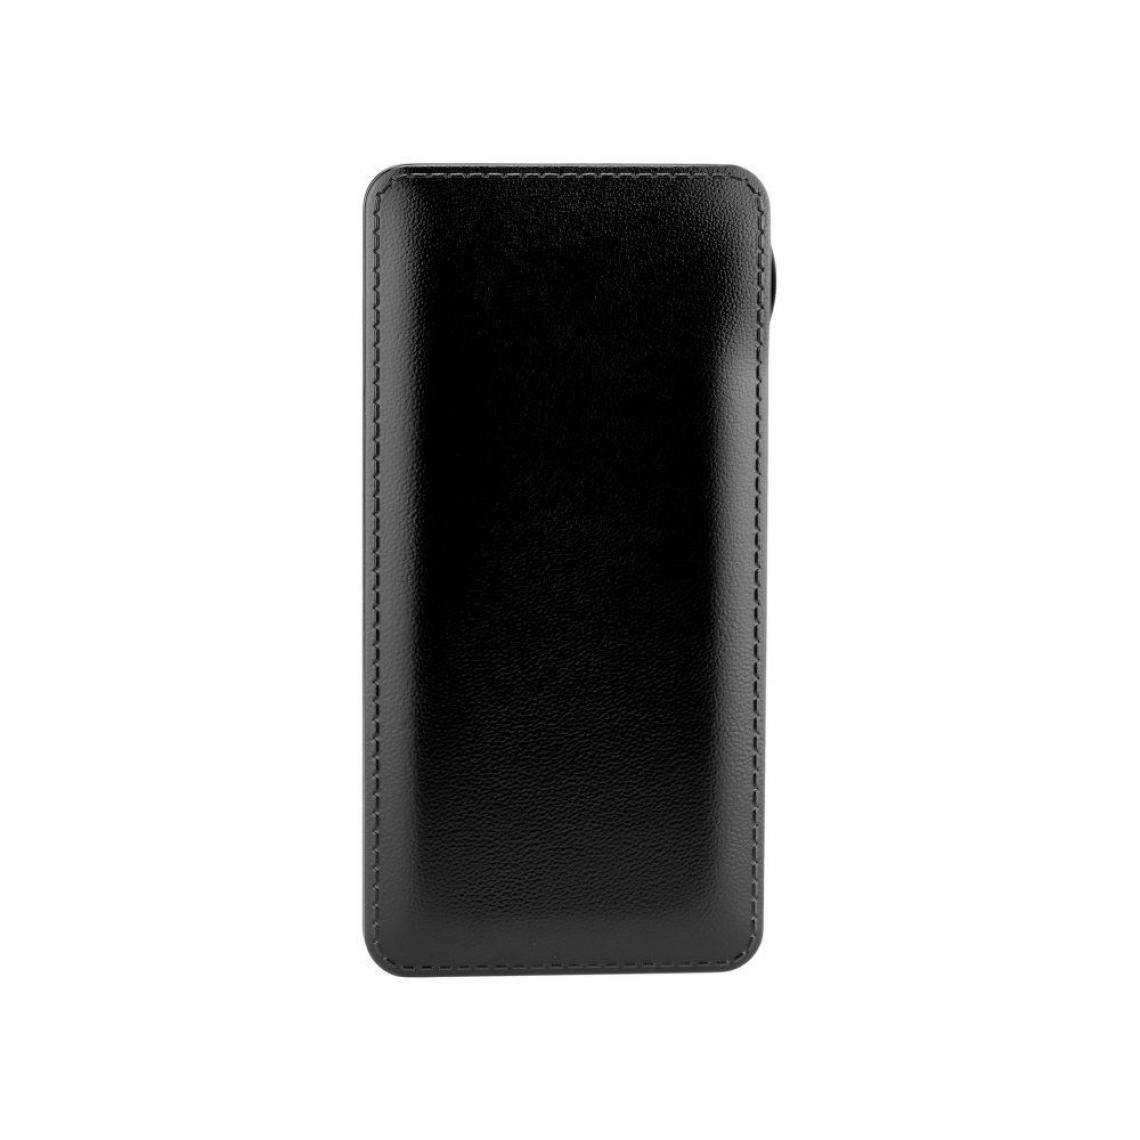 Ozzzo - Chargeur batterie externe 20000 mAh powerbank ozzzo noir pour Apple iPad Air - Autres accessoires smartphone